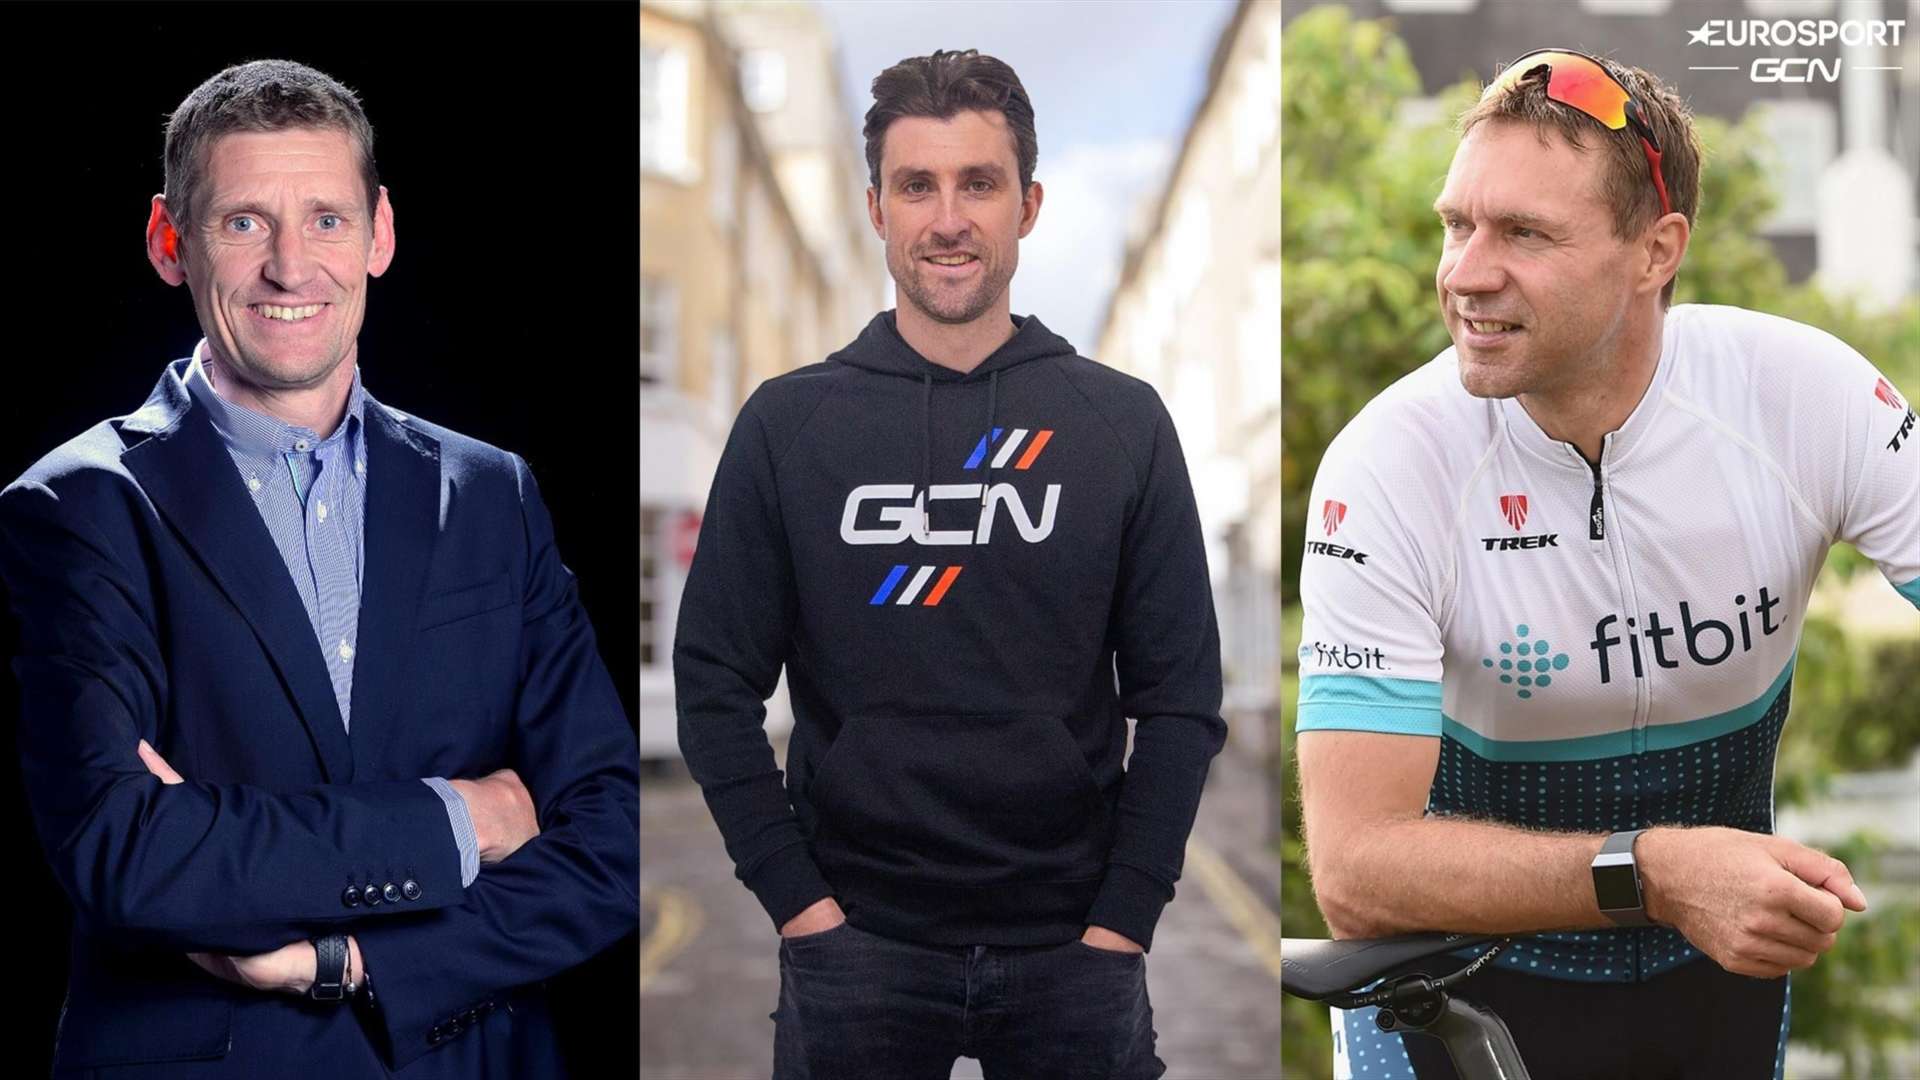 Eurosport plánuje vysílání Giro dItalia pro náročné cyklofanoušky